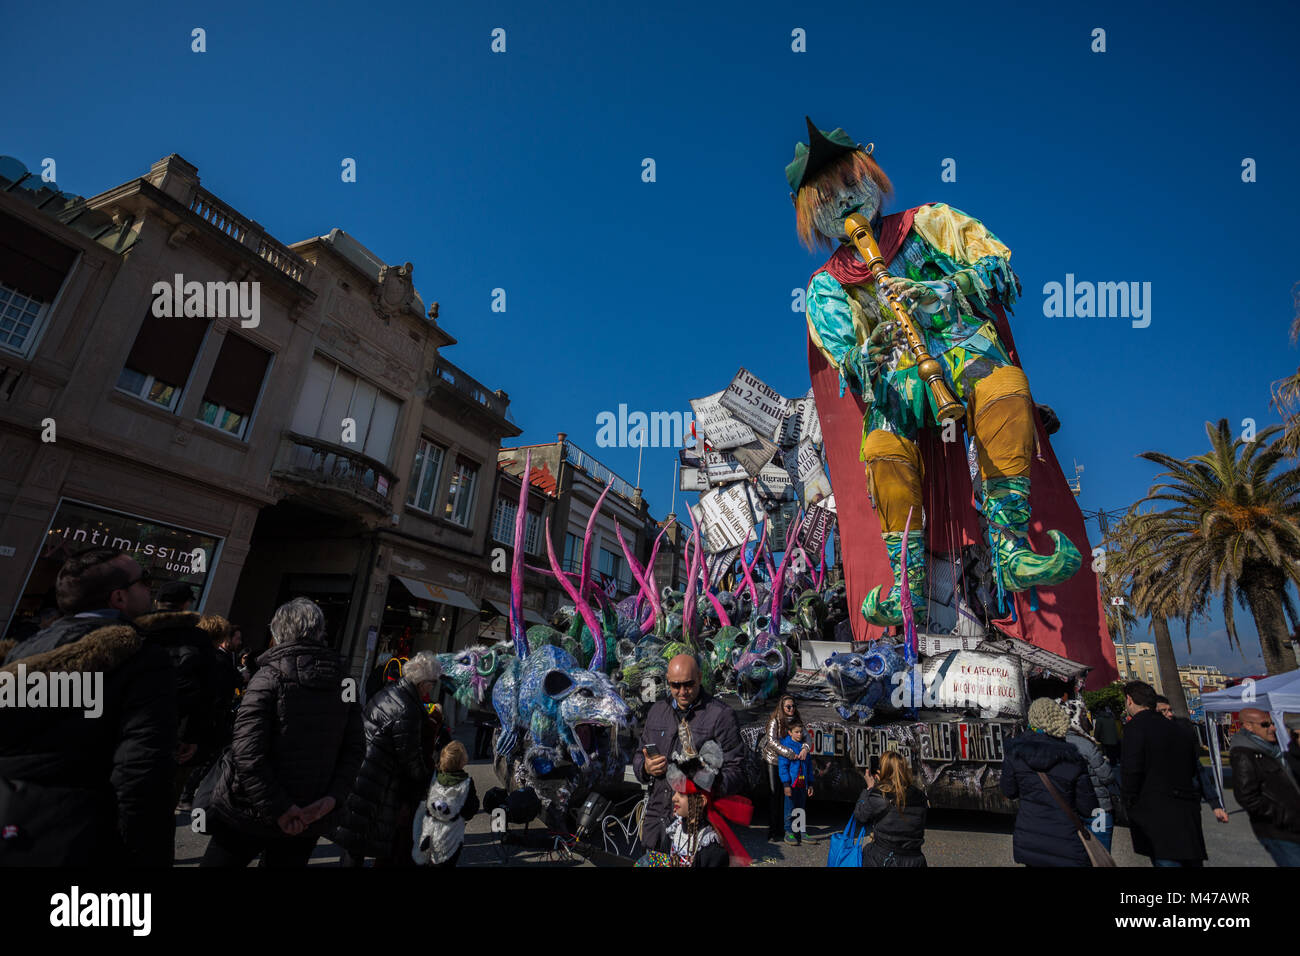 VIAREGGIO, ITALIEN - Feb 11: Festival, die Parade der Wagen mit dem tanzen die Menschen auf den Straßen von Viareggio. Februar 11, 2018, in Viareggio, Italien Stockfoto